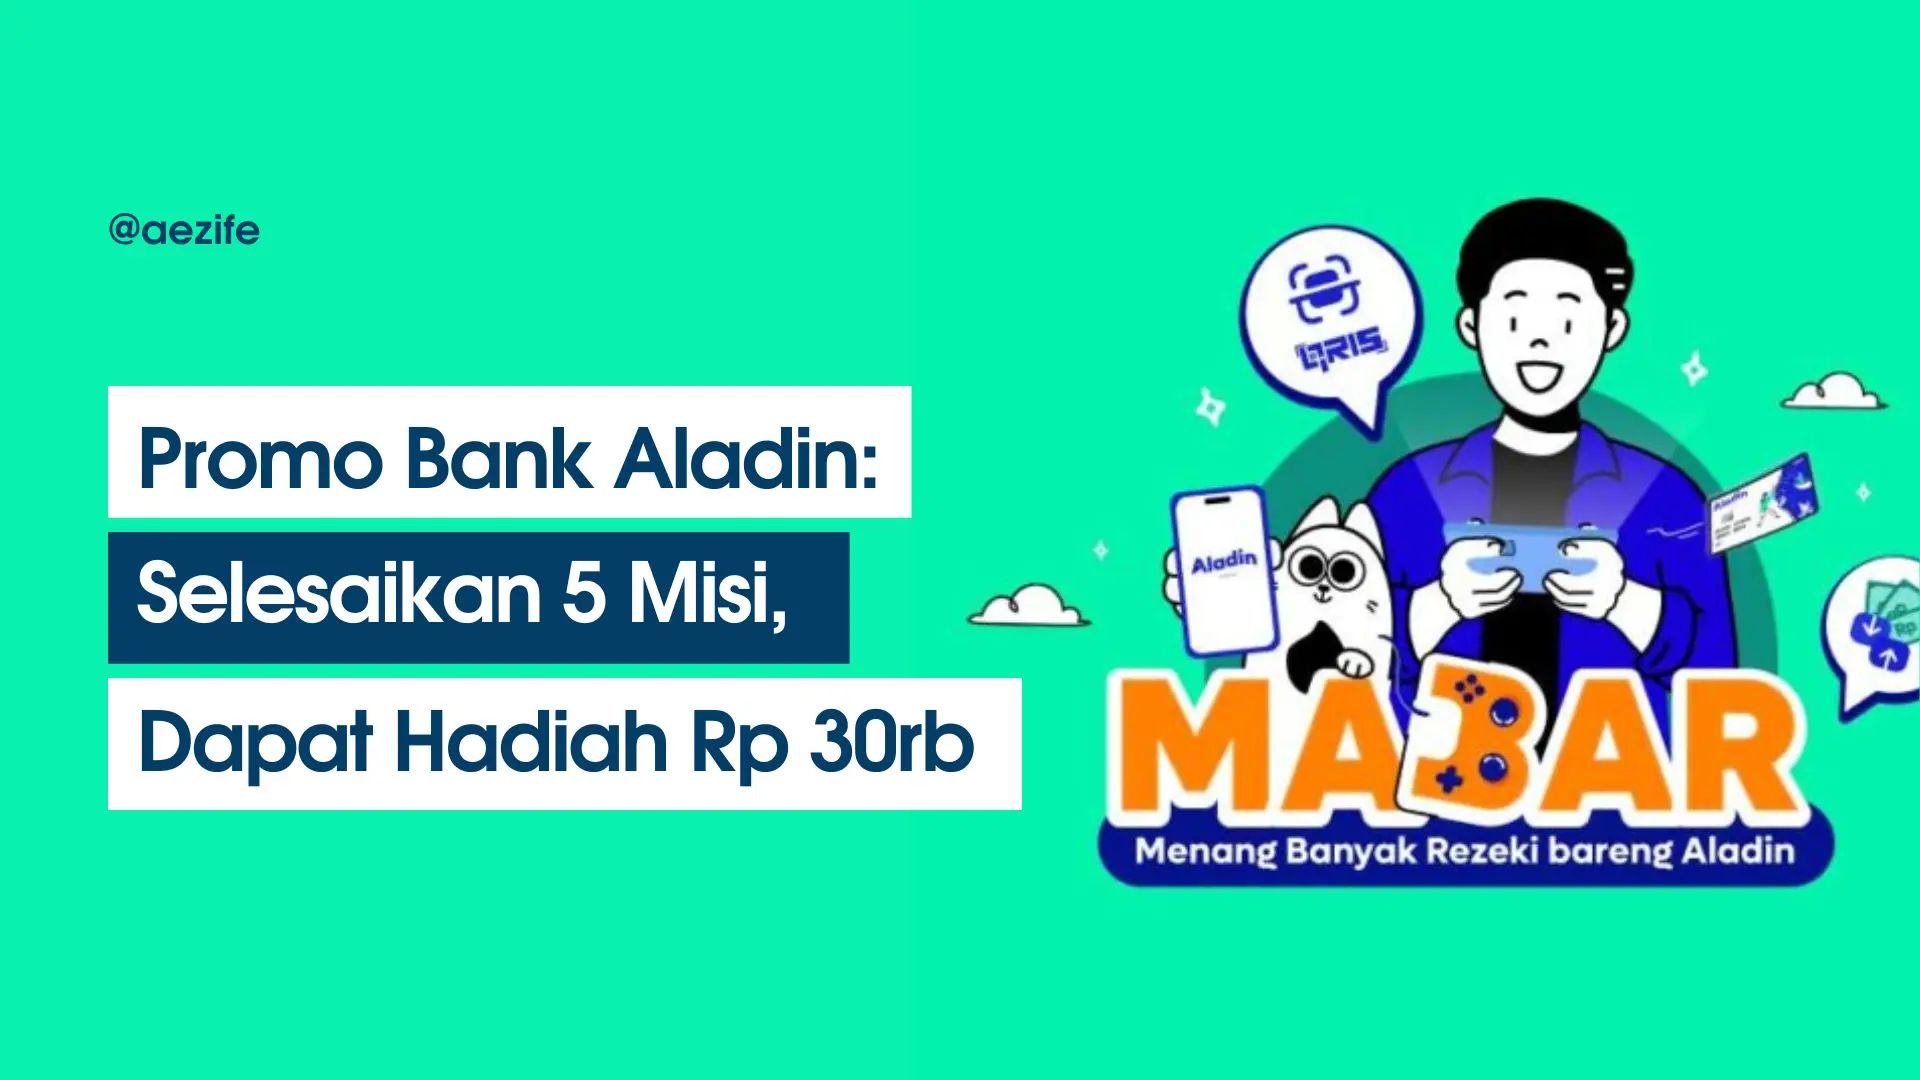 Promo Bank Aladin Terbaru 2023 Selesaikan 5 Misi, Hadiah Saldo Rp 30rb (COVER)